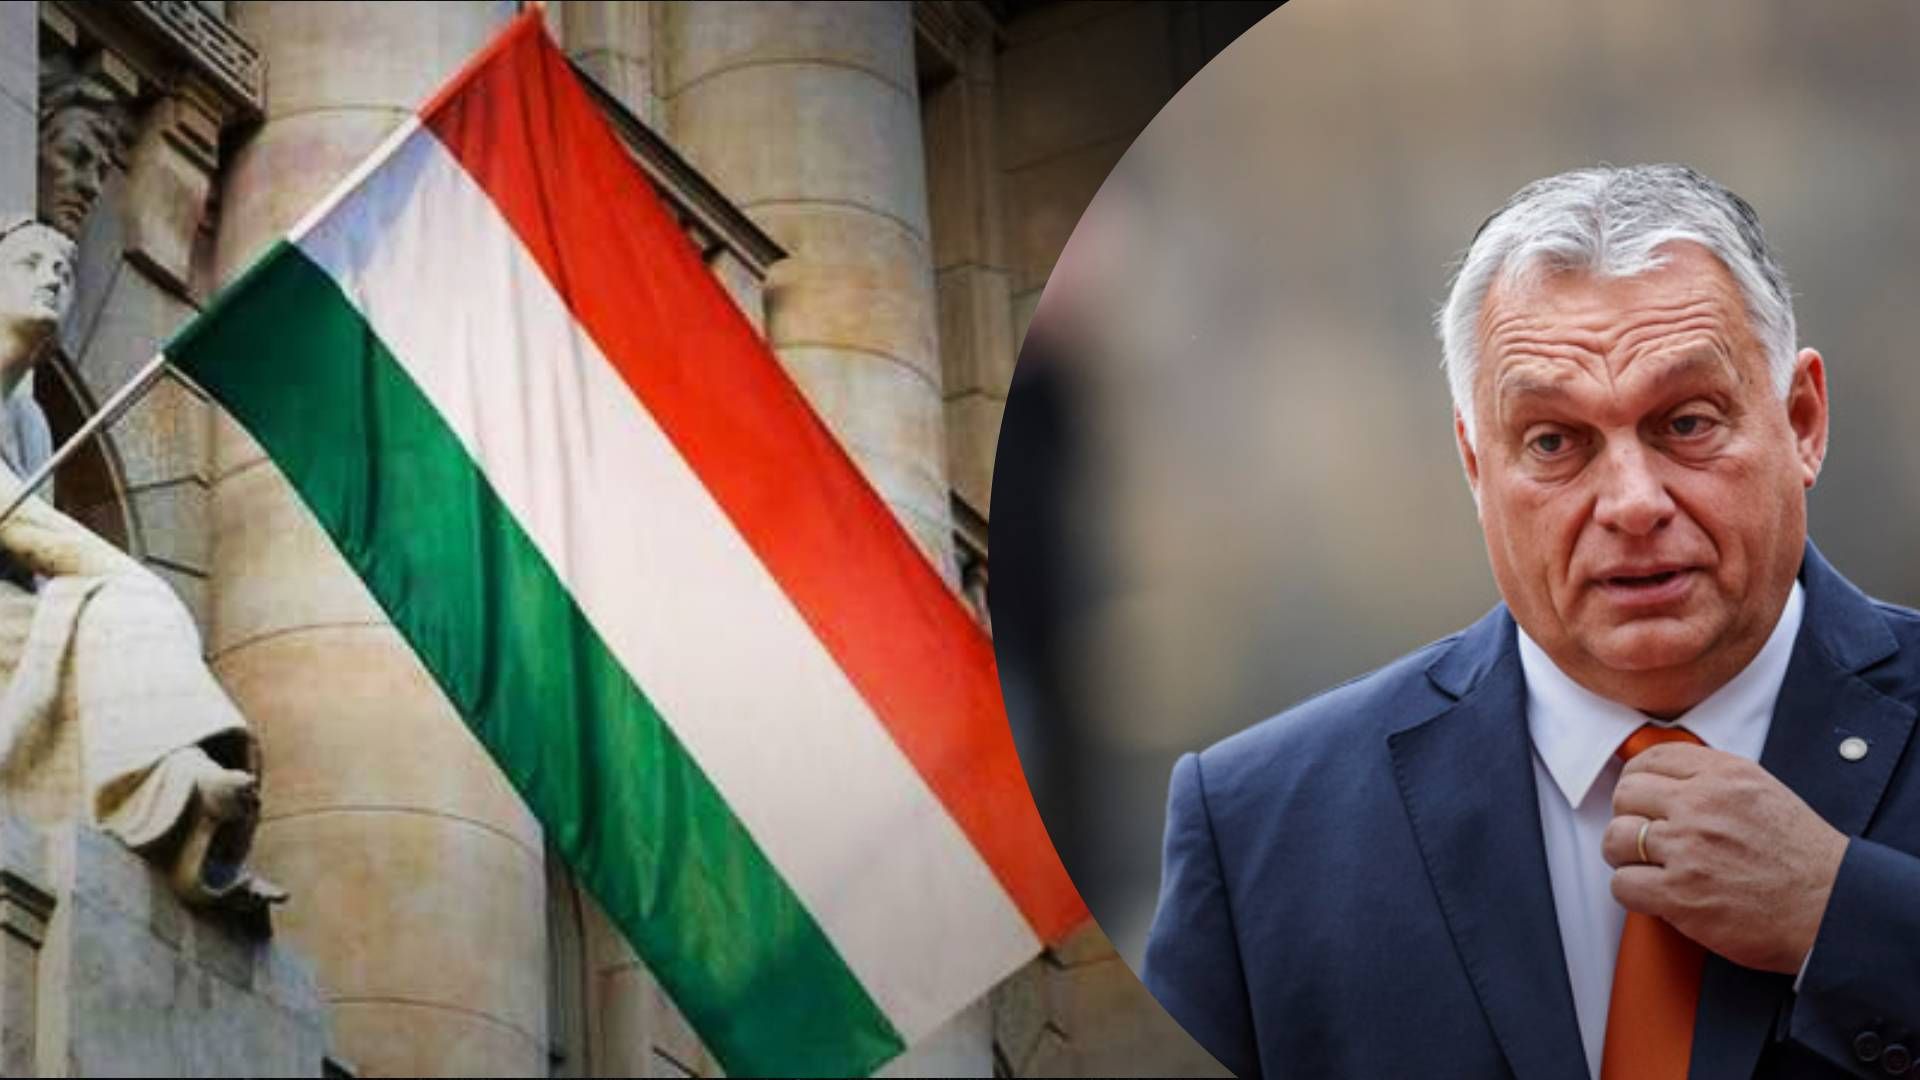 Допомоги не буде: Орбан знову осоромився черговою заявою про Україну та "утиски" угорців - 24 Канал